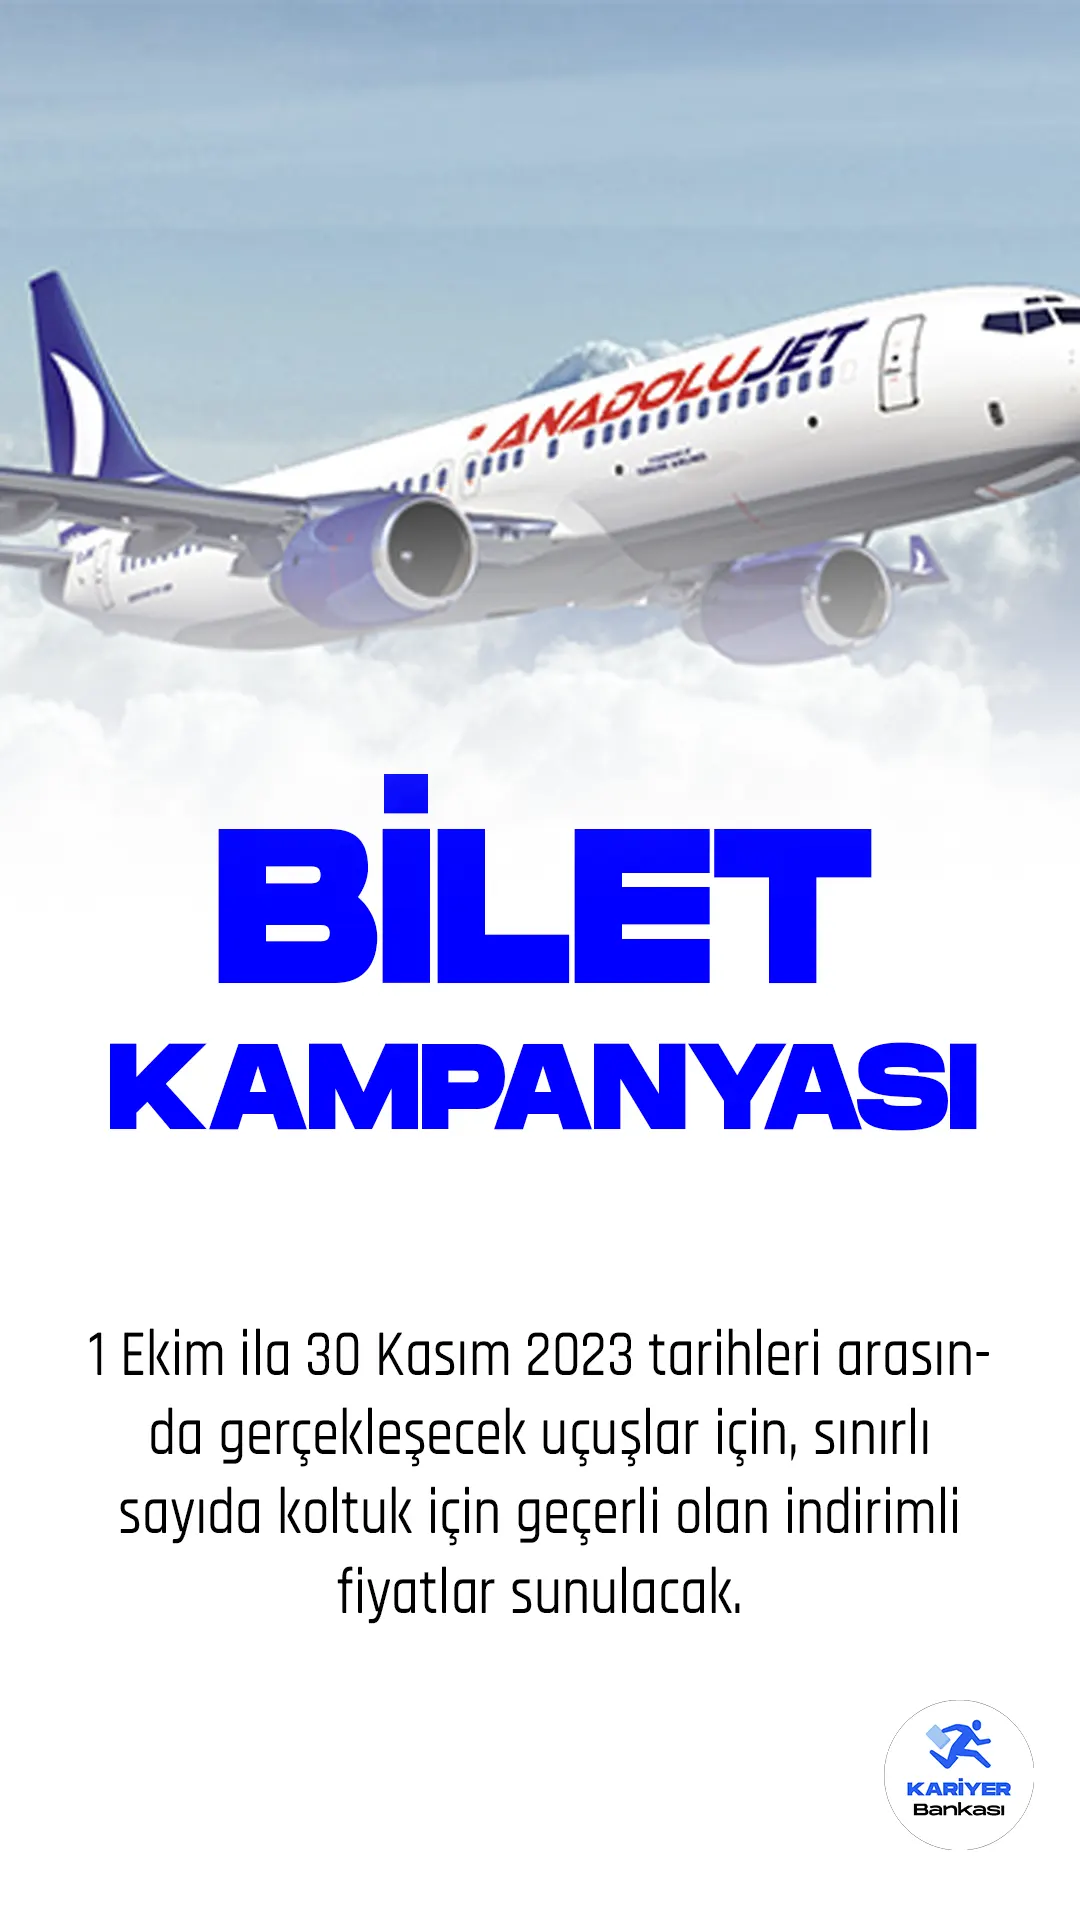 Türk Hava Yolları'nın markası AnadoluJet, Kuzey Kıbrıs'a avantajlı biletler satışa çıkardı. Buna göre, 1 Ekim ila 30 Kasım 2023 tarihleri arasında gerçekleşecek uçuşlar için, sınırlı sayıda koltuk için geçerli olan indirimli fiyatlar sunulacak.